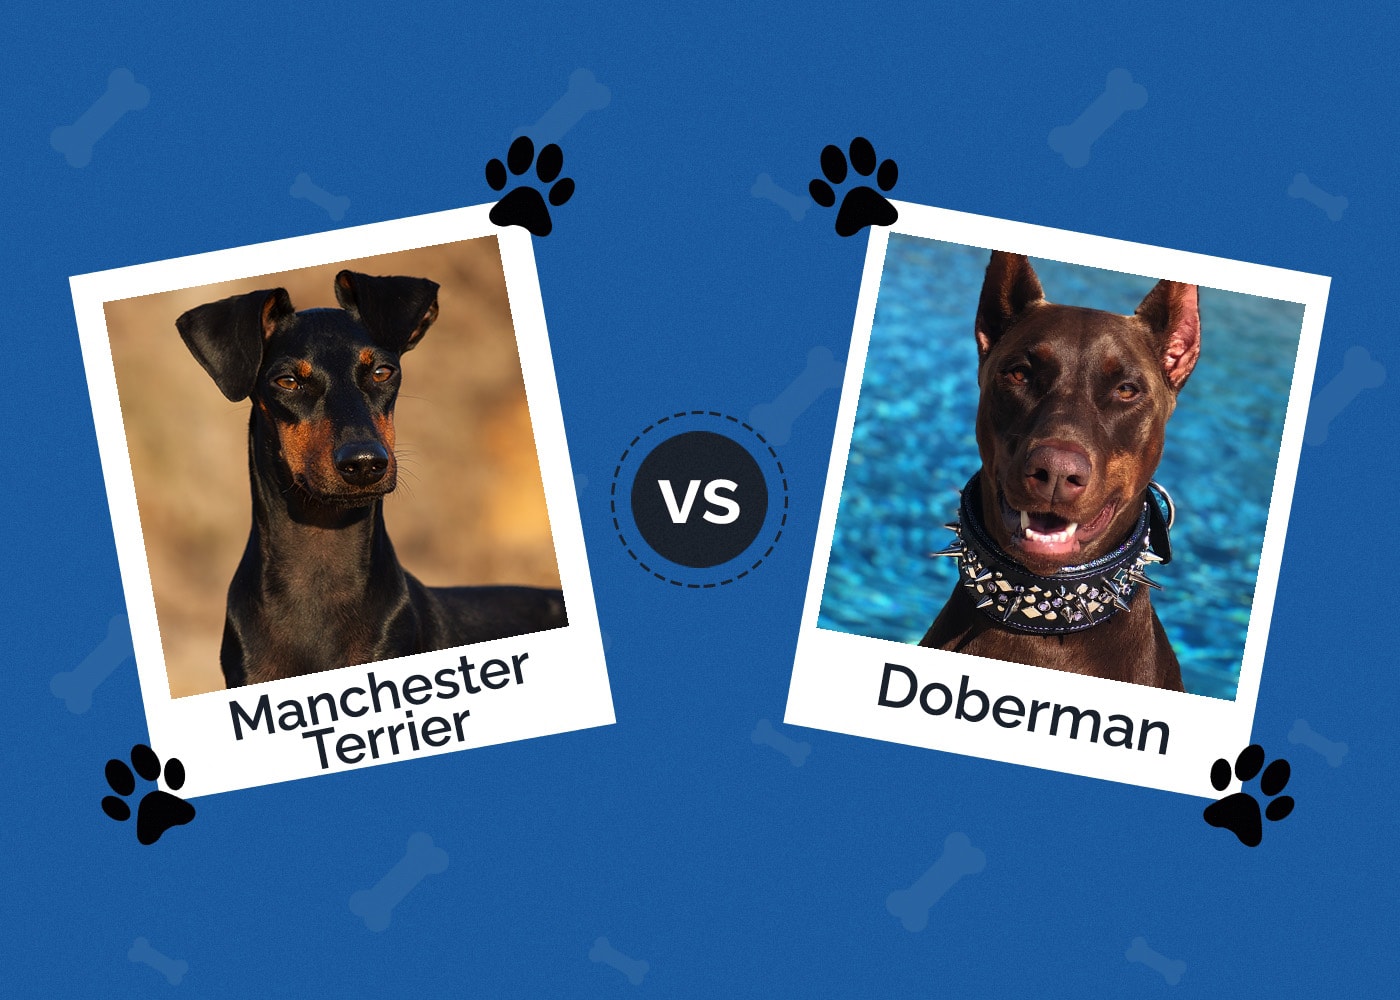 Manchester Terrier vs Doberman